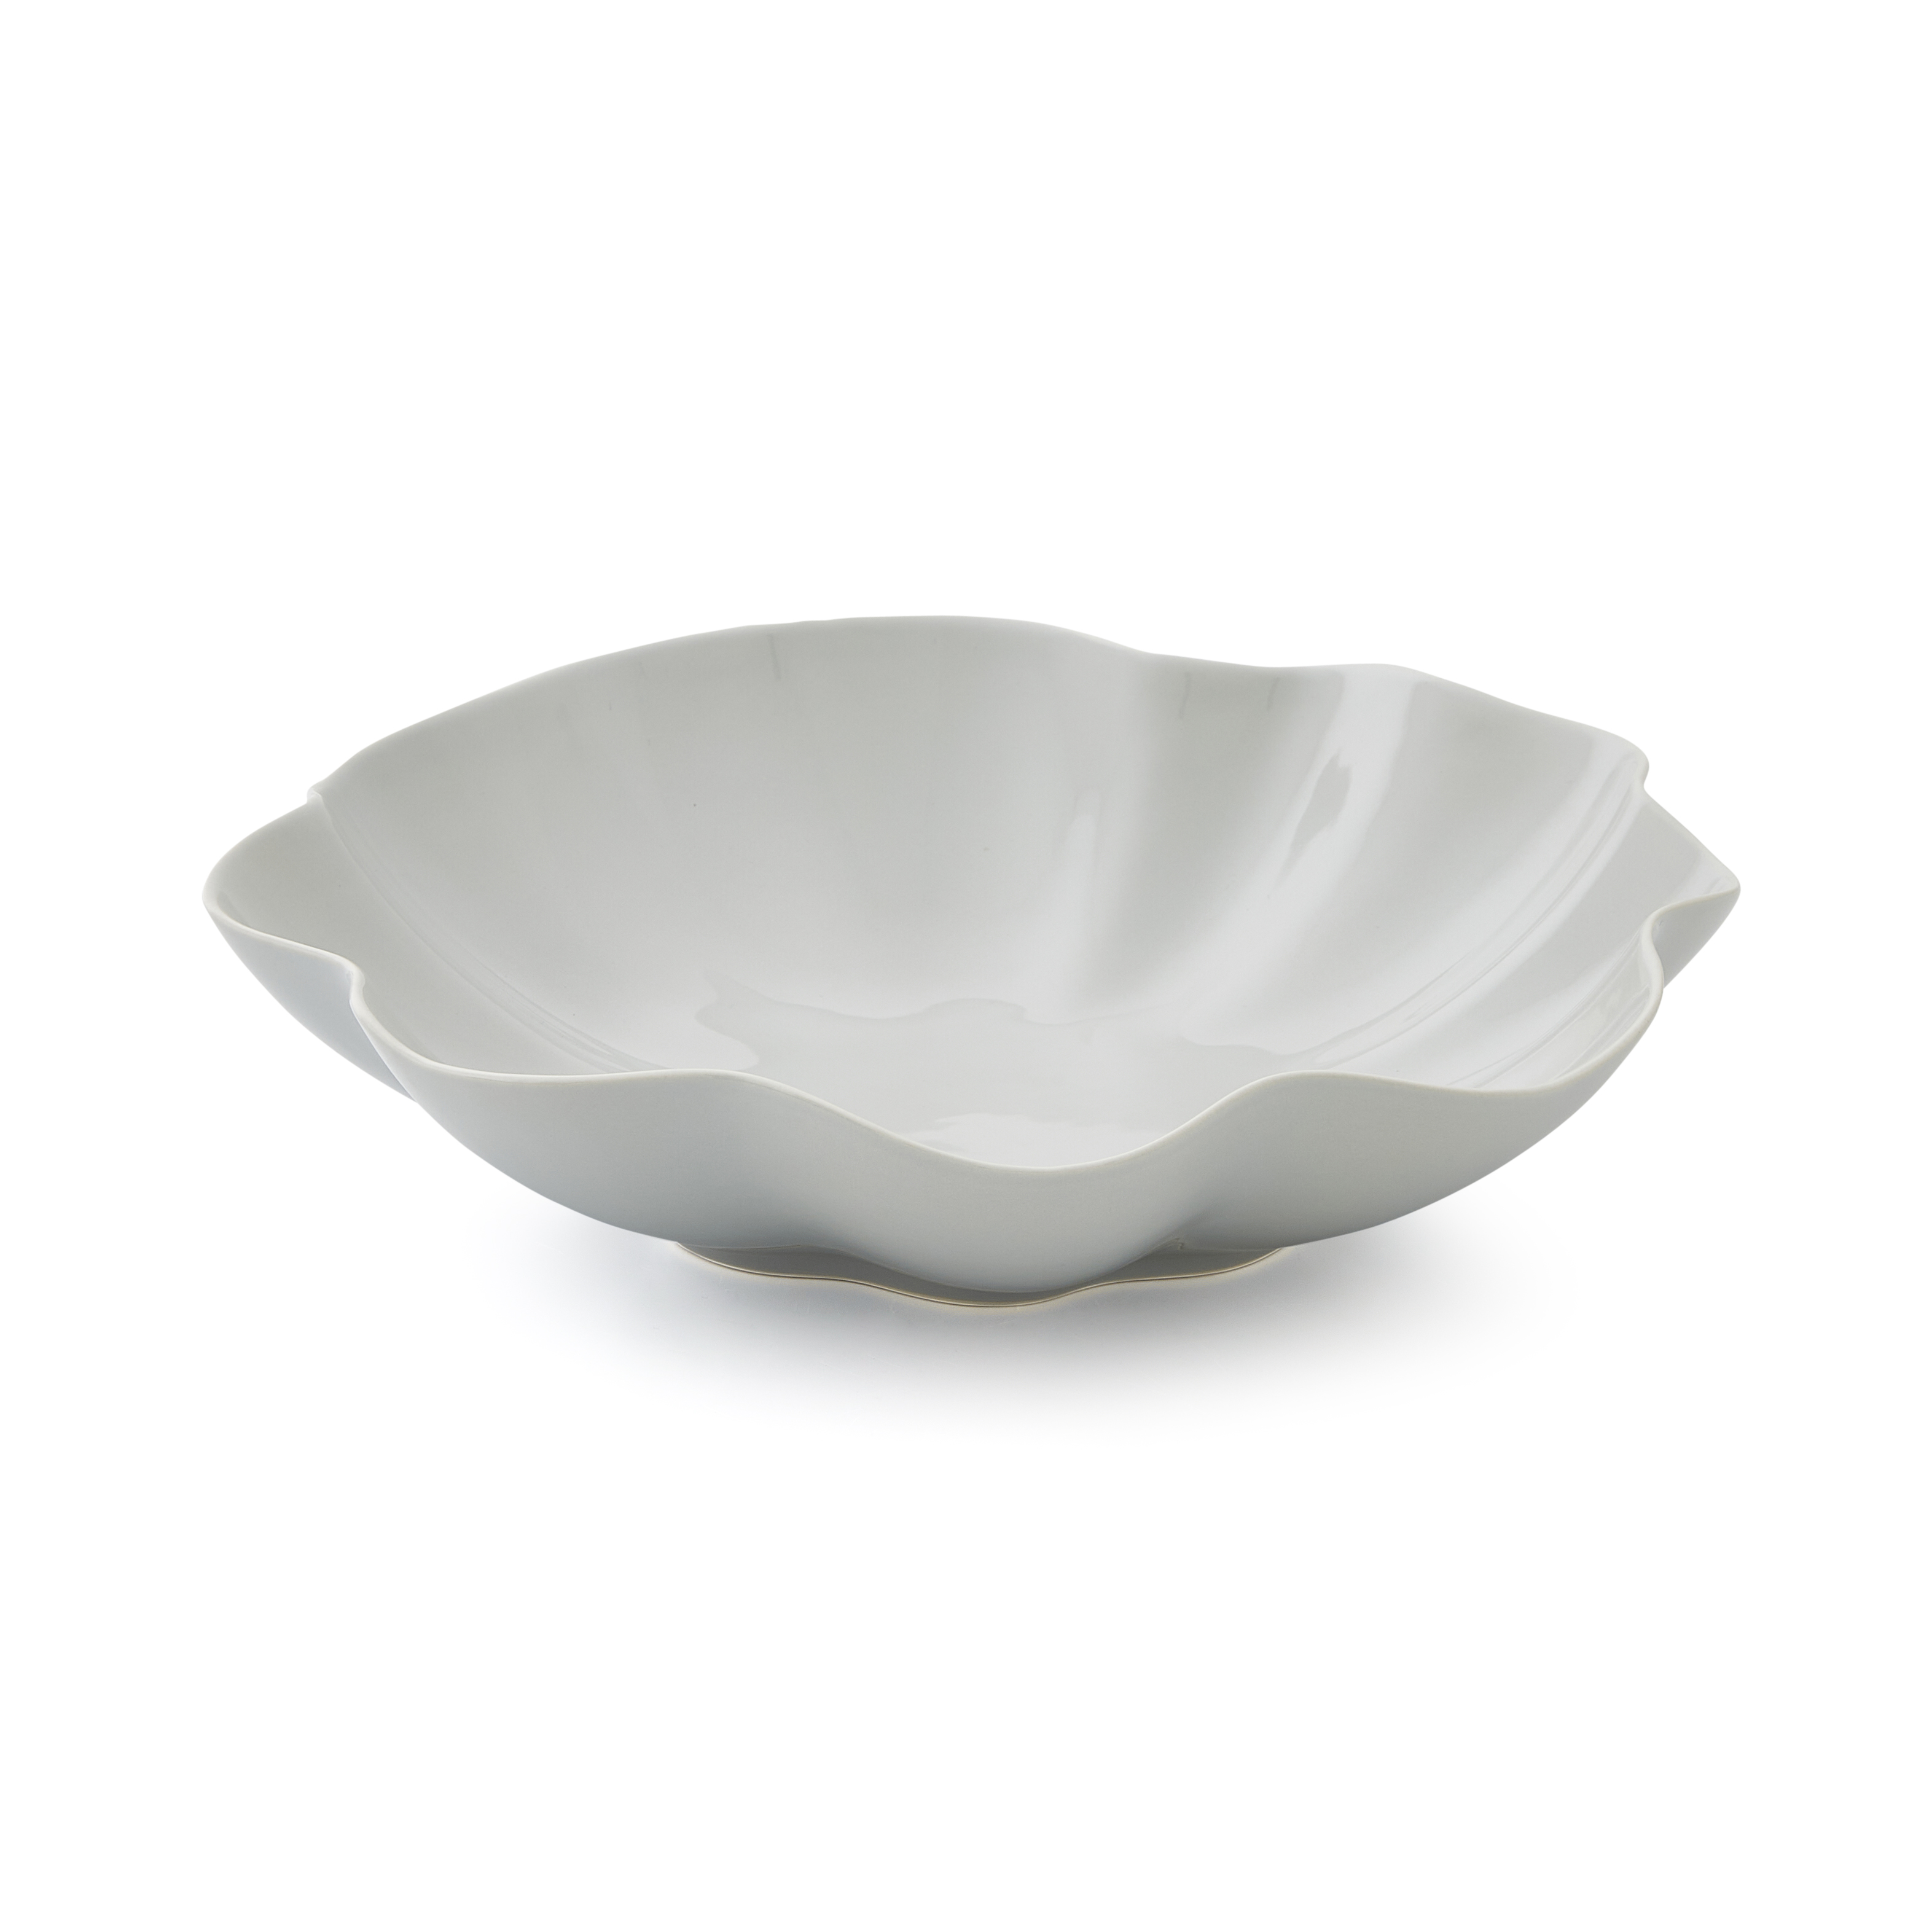 Sophie Conran Floret Large Serving Bowl-Dove Grey image number null